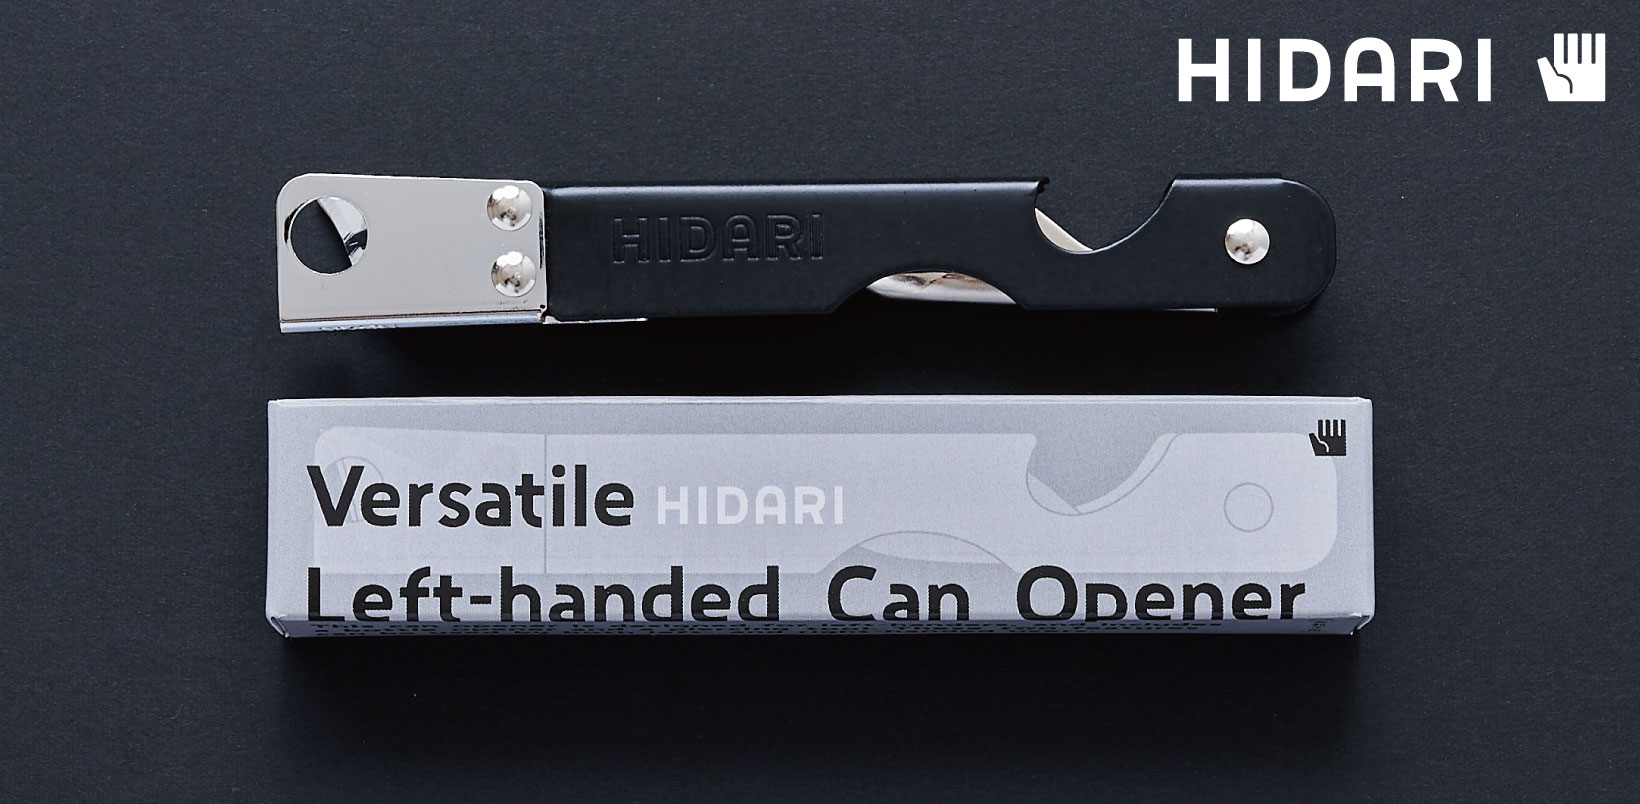 HIDARI Versatile Left-handed Can Opener